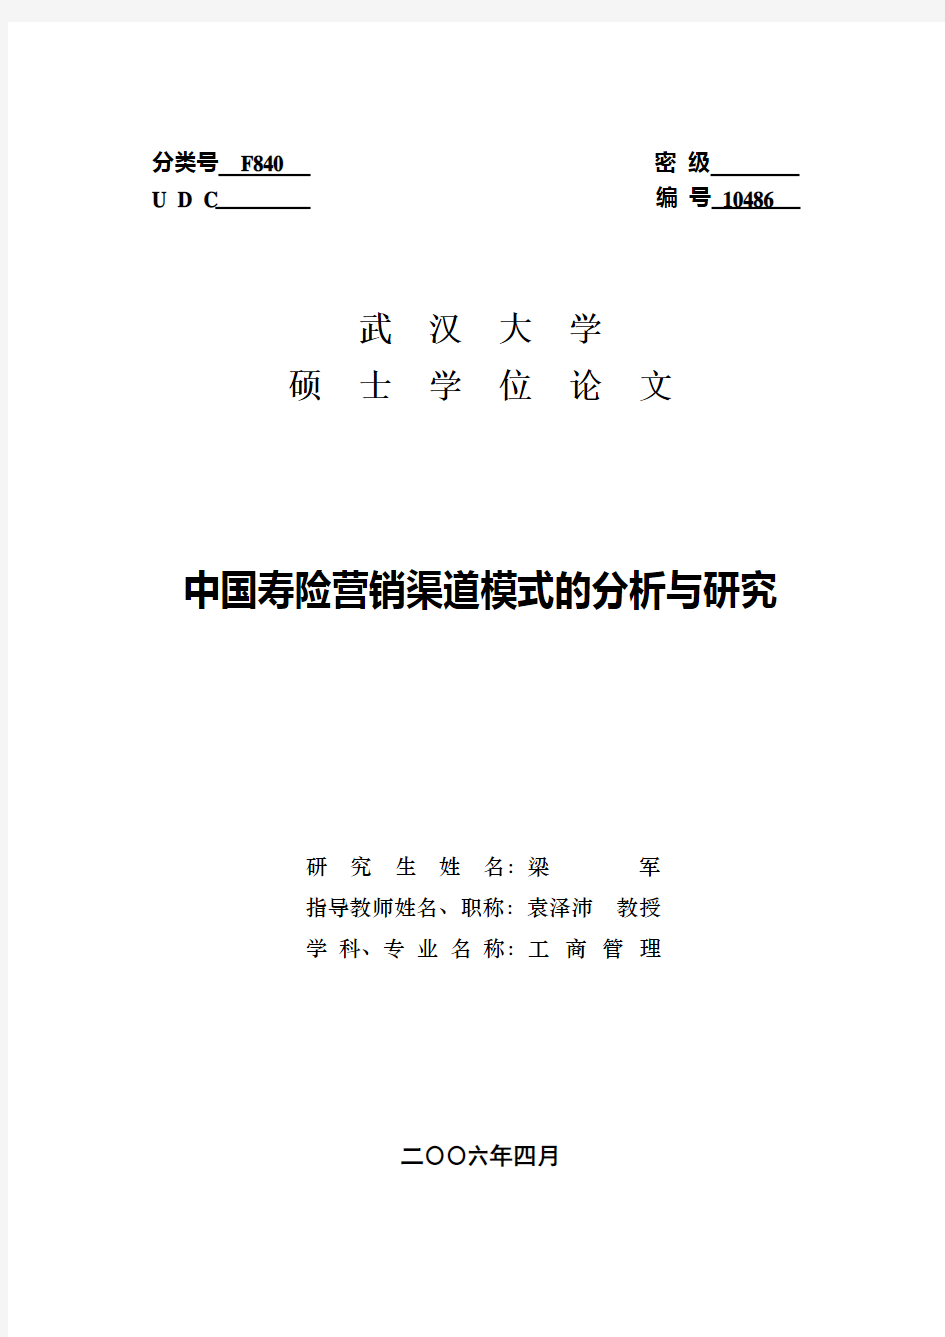 中国寿险营销模式的探讨和研究文章(修改)11